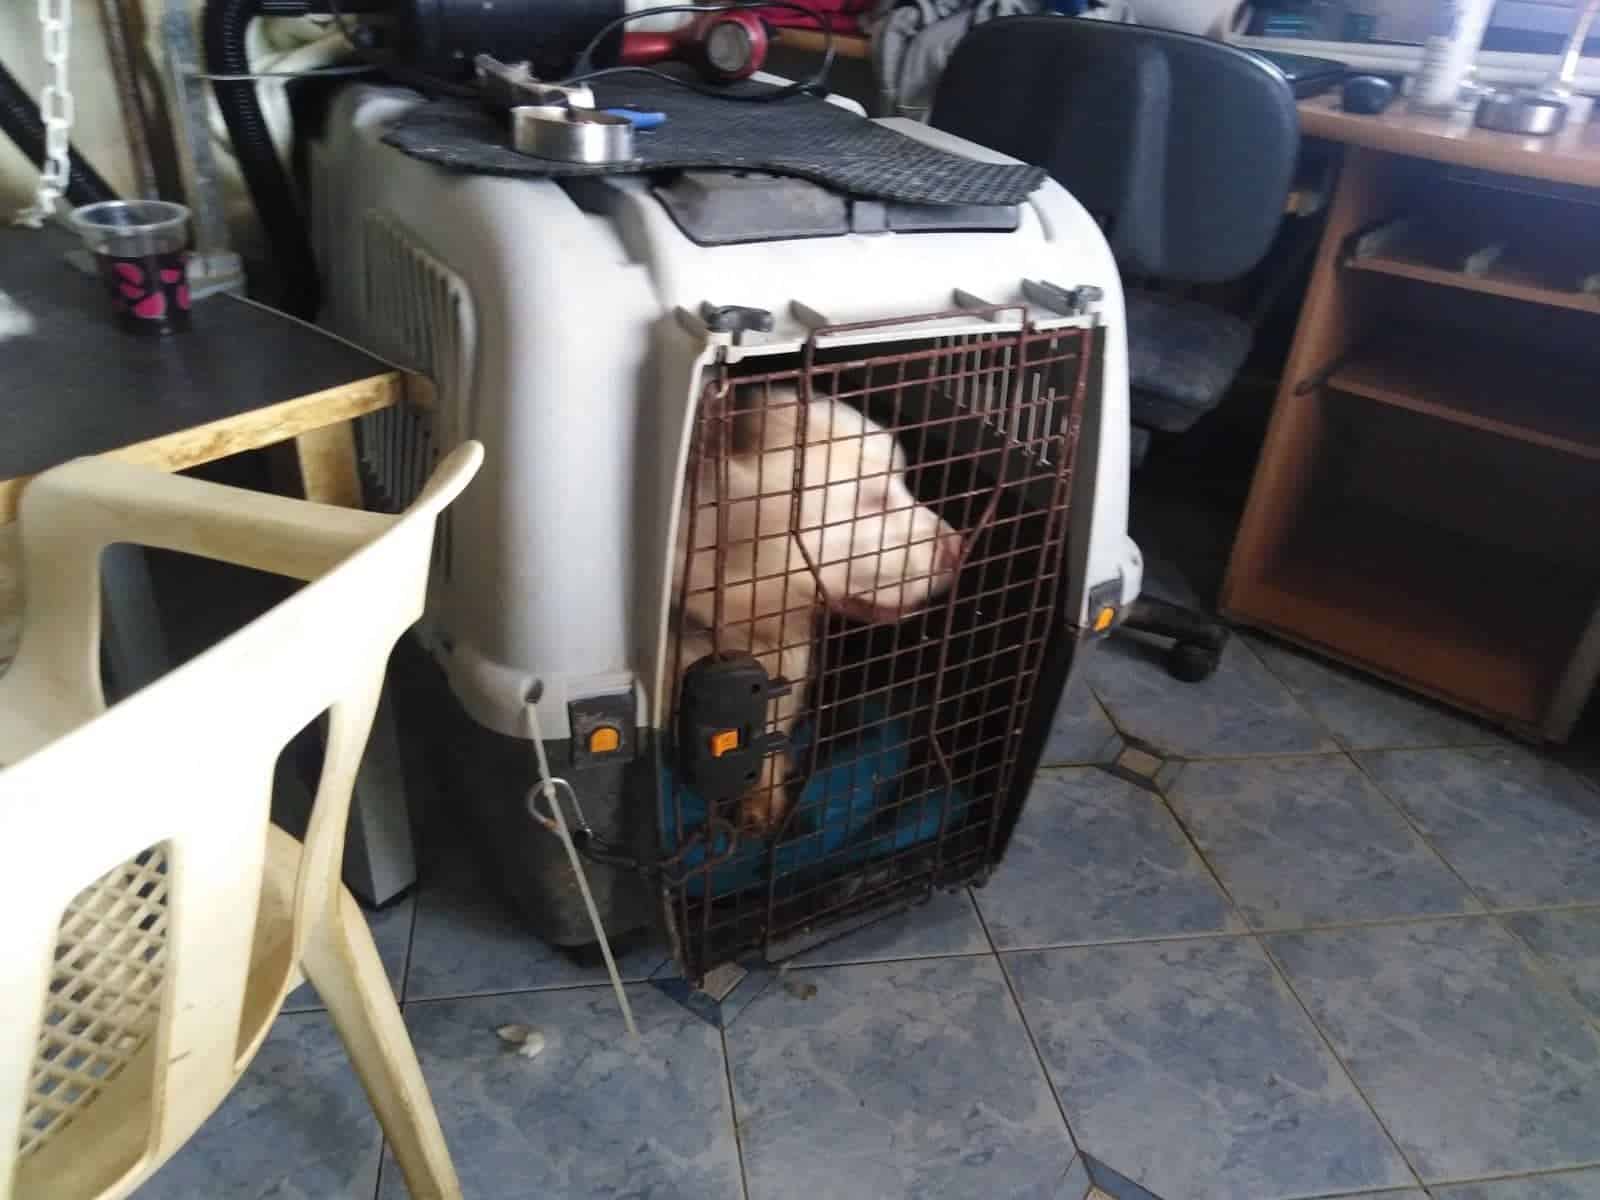 16 σκυλιά σε κλουβιά κράταγε 60χρονη στην Θεσσαλονίκη